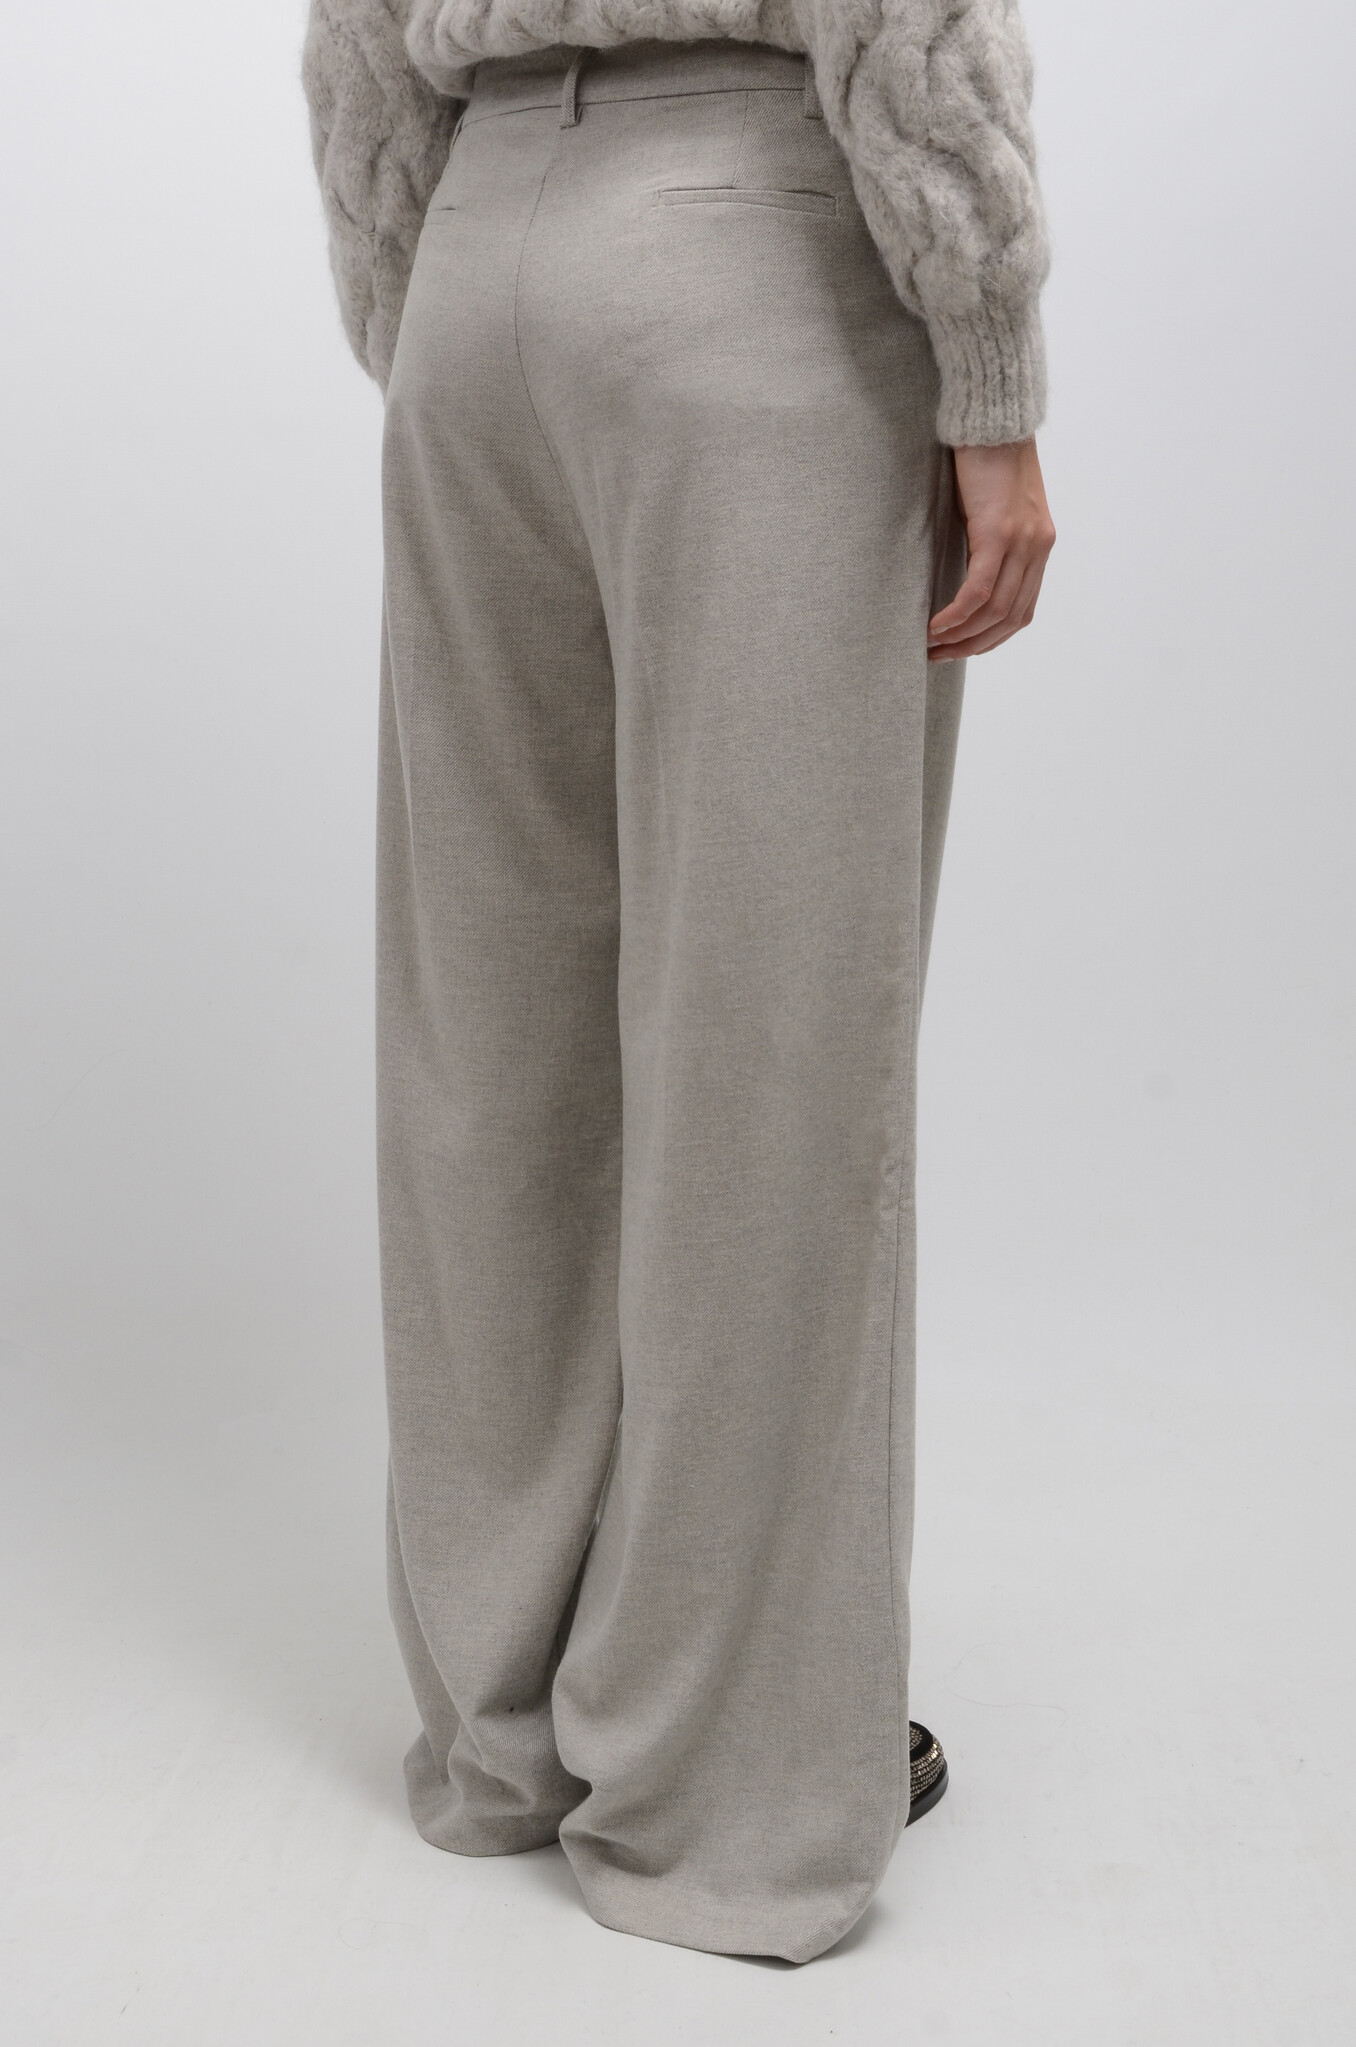 Marley Pants Wool in Grey-6